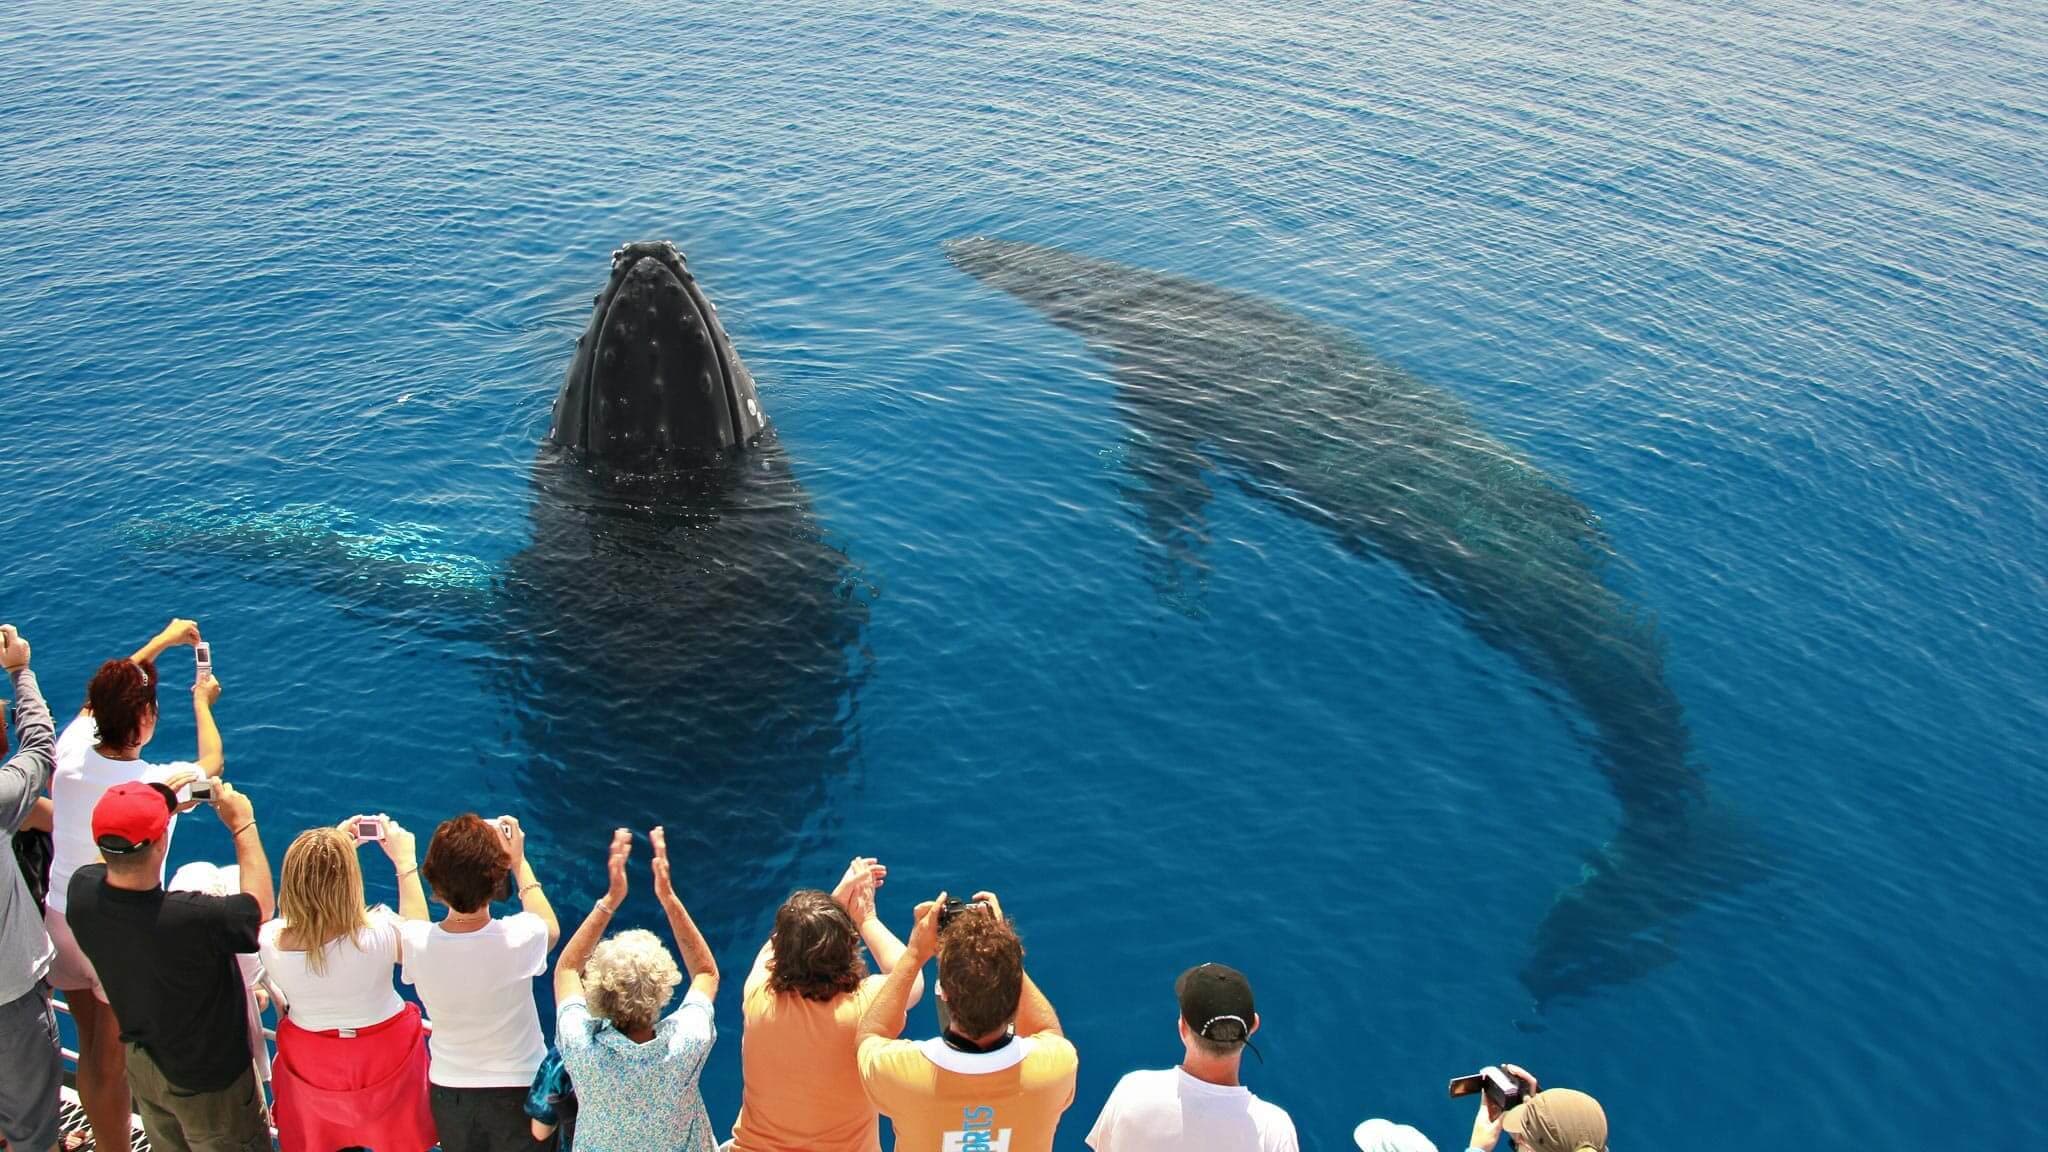 Огромная пара китов окружила лодку, и туристы фотографируются в море Калпития.